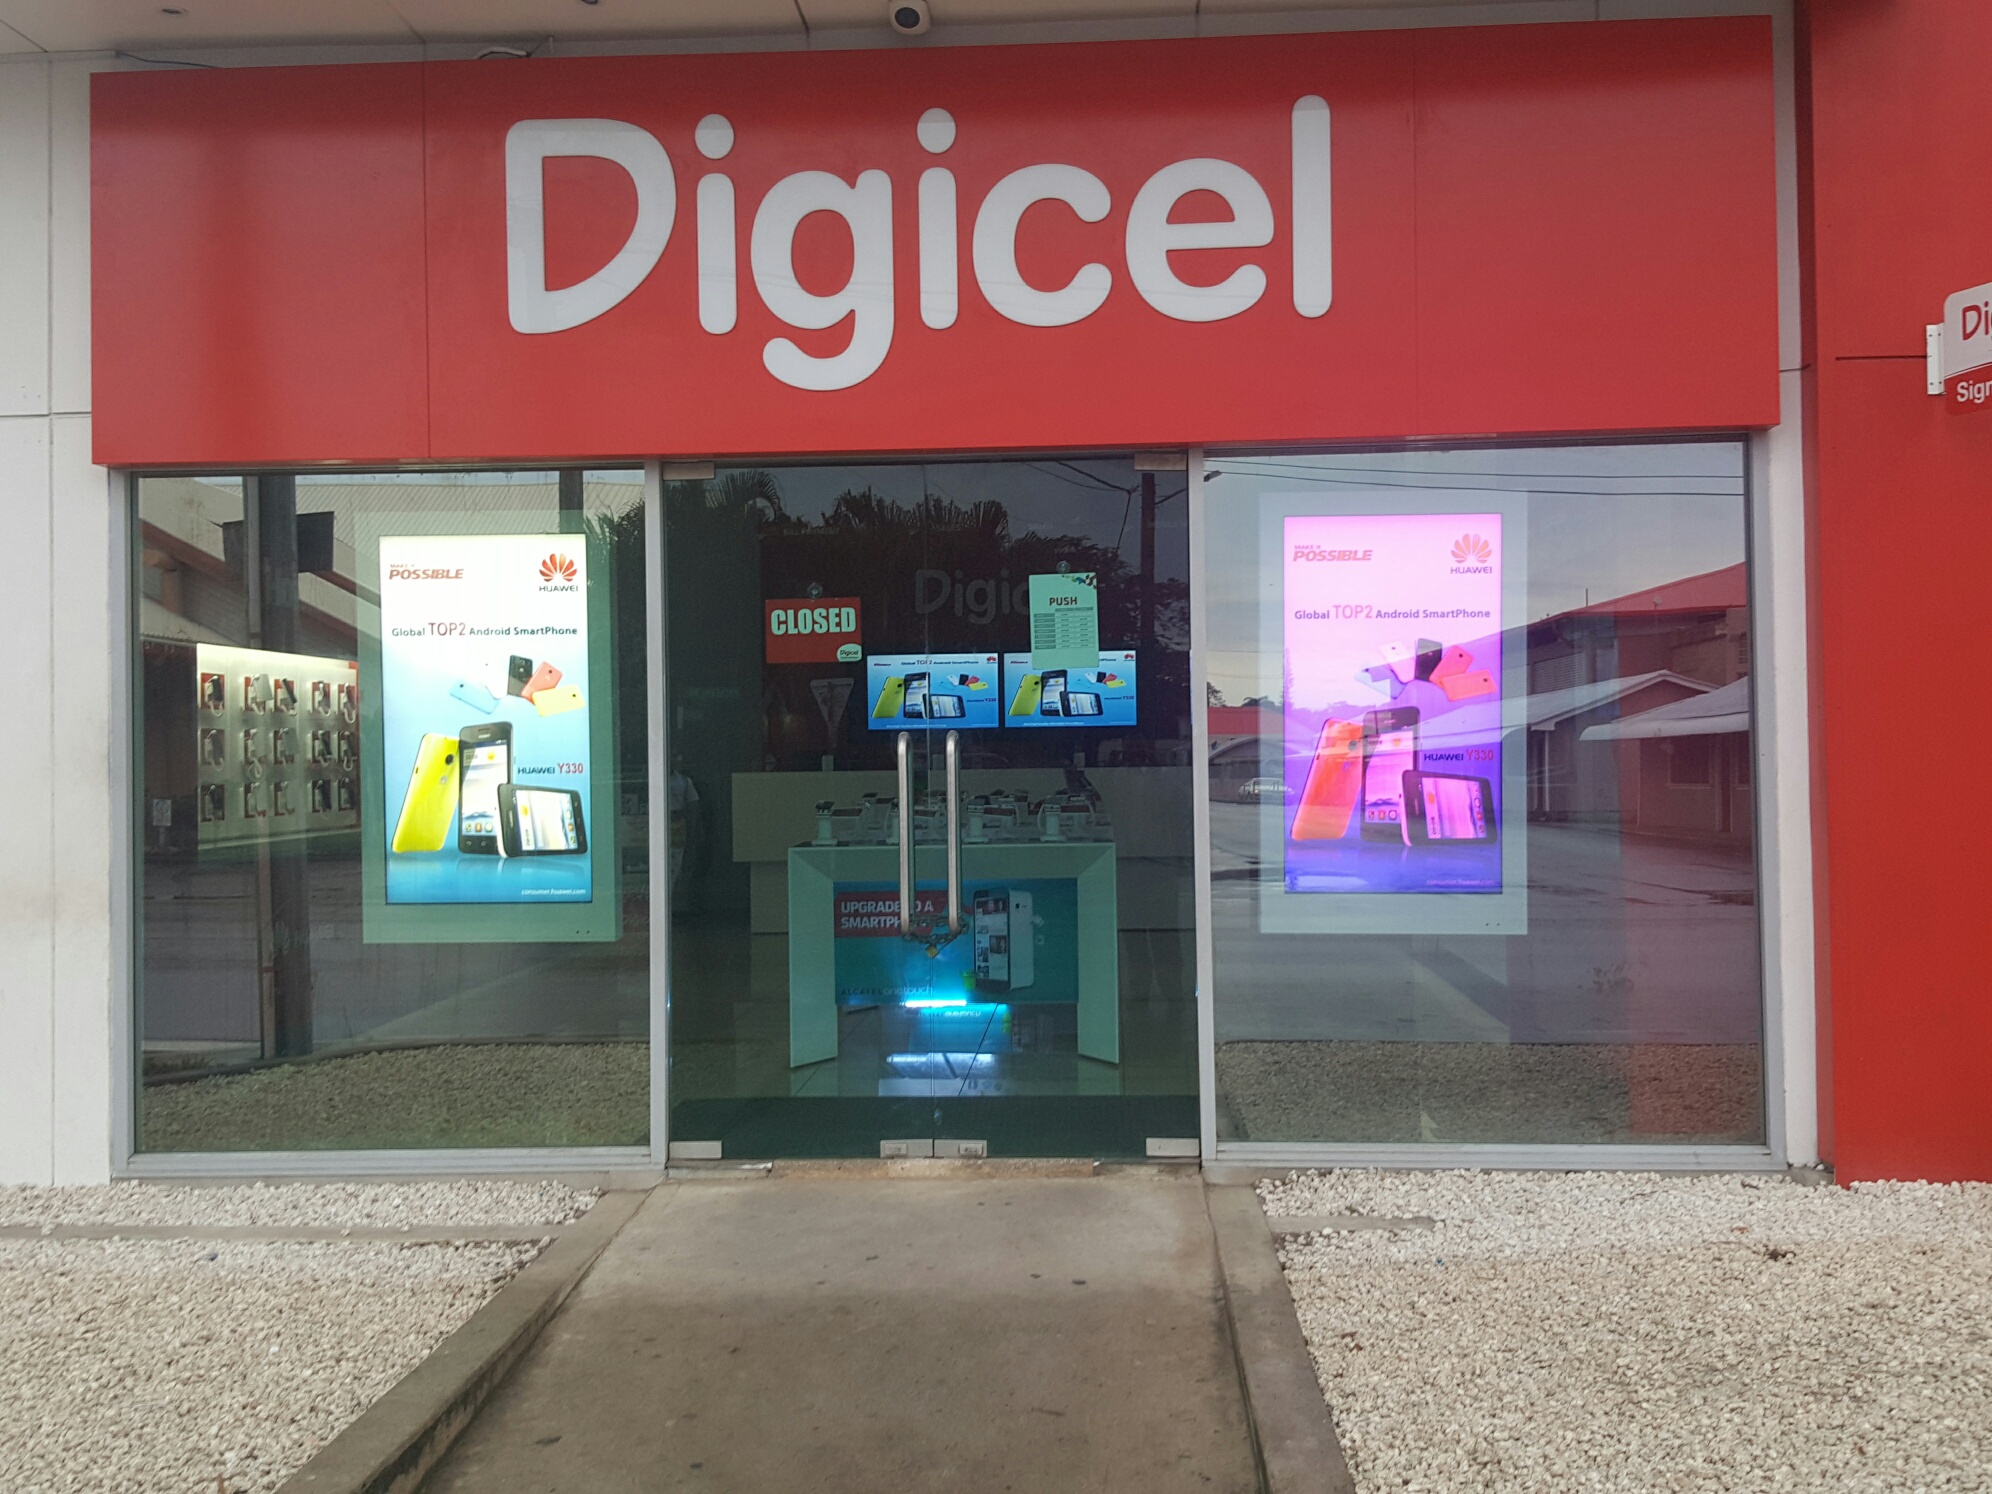 senpal windows publicidad display mudarse a fiji degicel